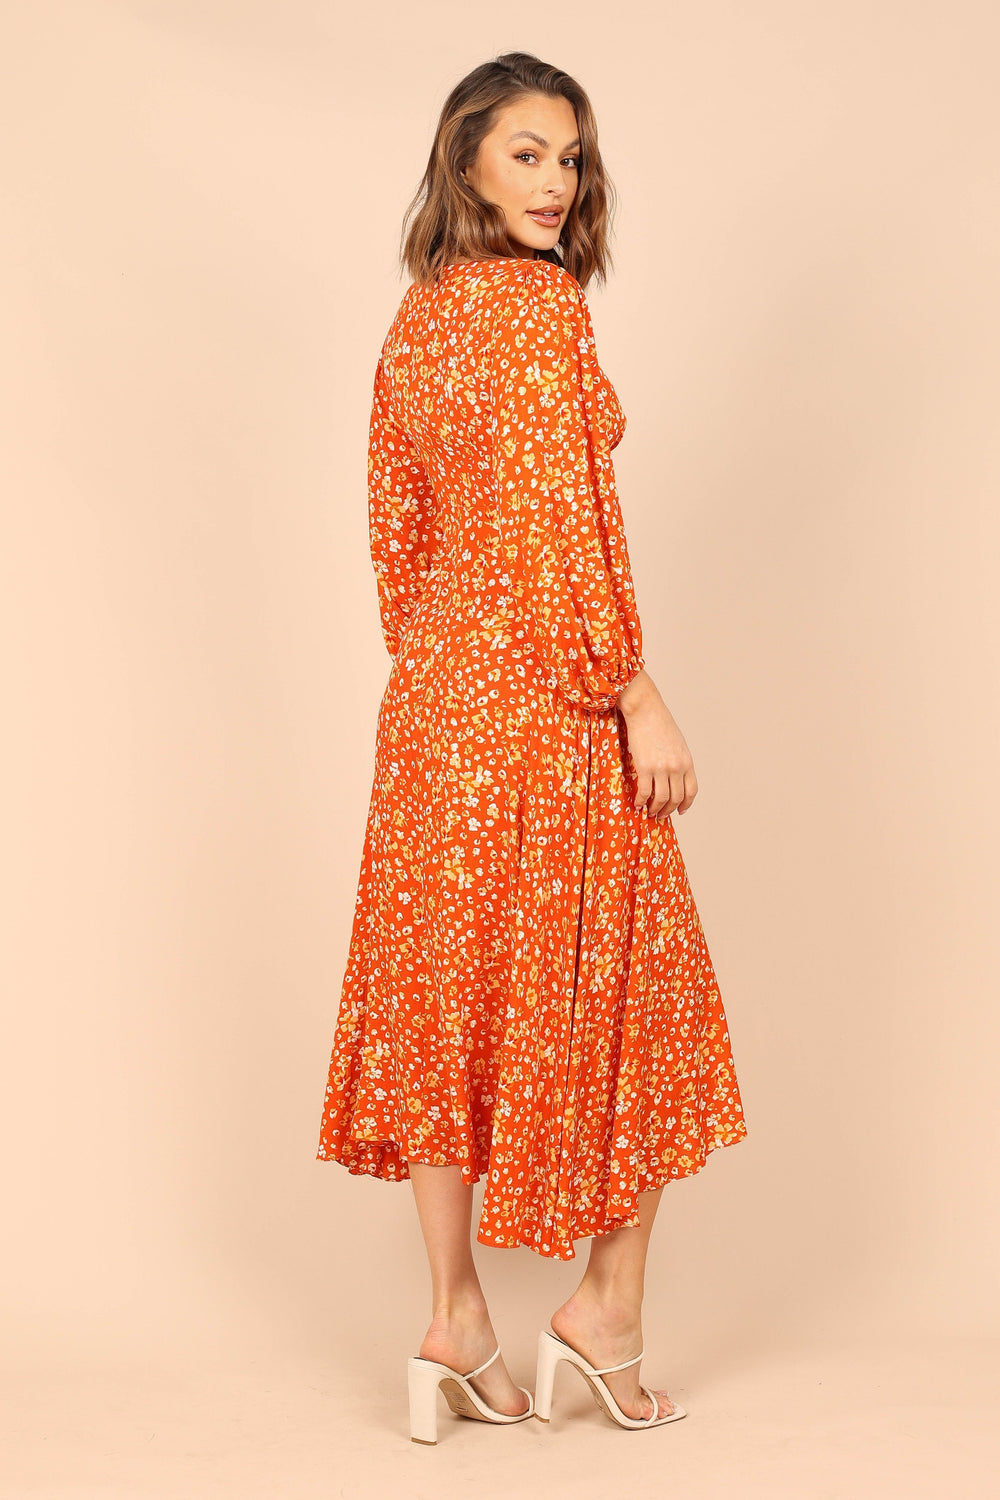 Petal and Pup USA DRESSES Aron Long Sleeve Maxi Dress - Orange Floral